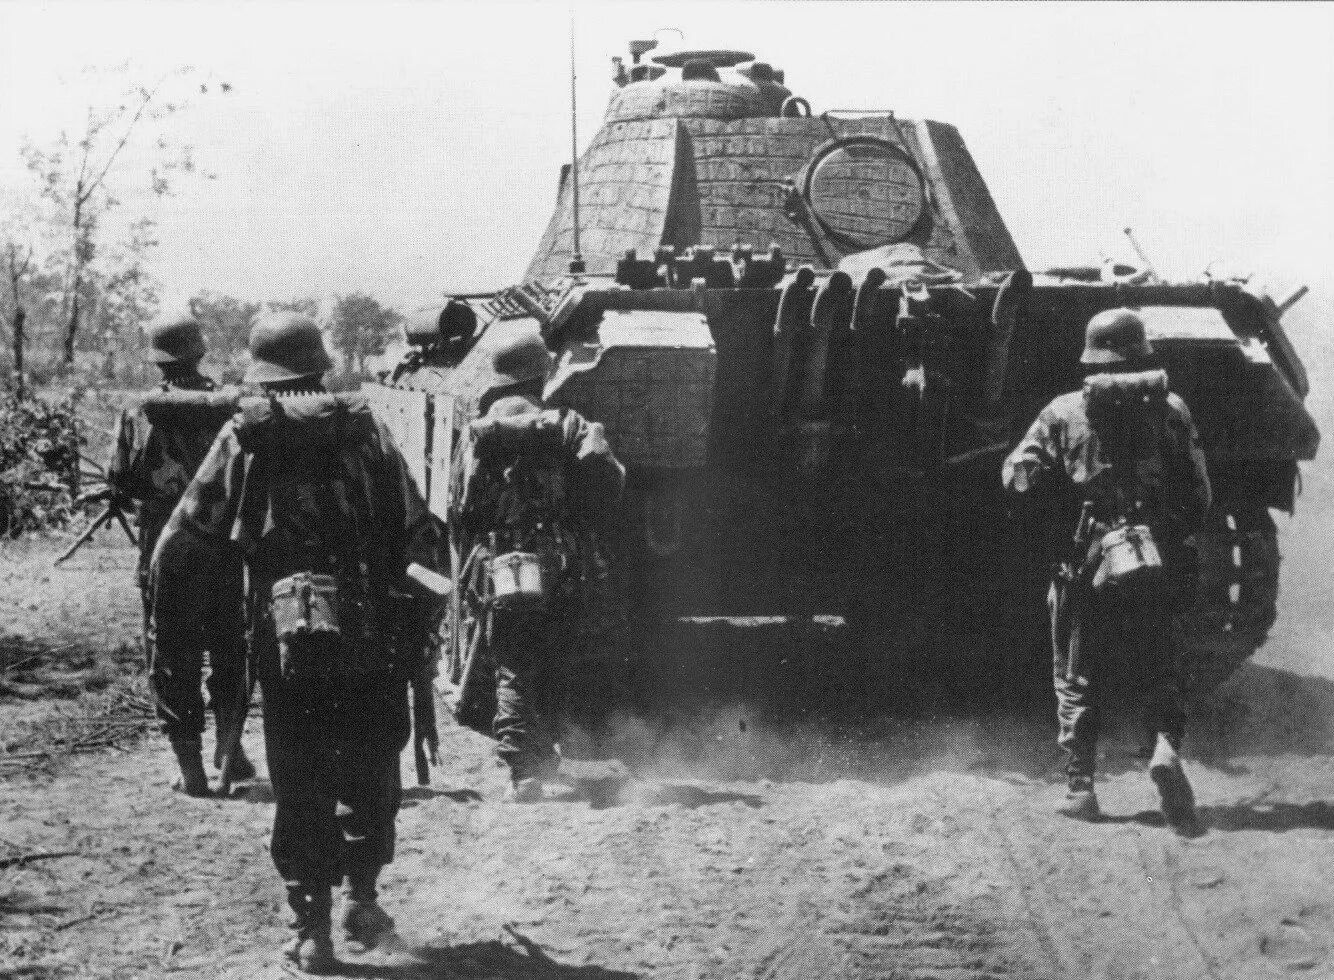 Осень 1944 года. Танк пантера дивизии СС. Panther Восточный фронт 1944. Танкисты дивизии Великая Германия. Немецкий танк пантера 2 мировой войны.